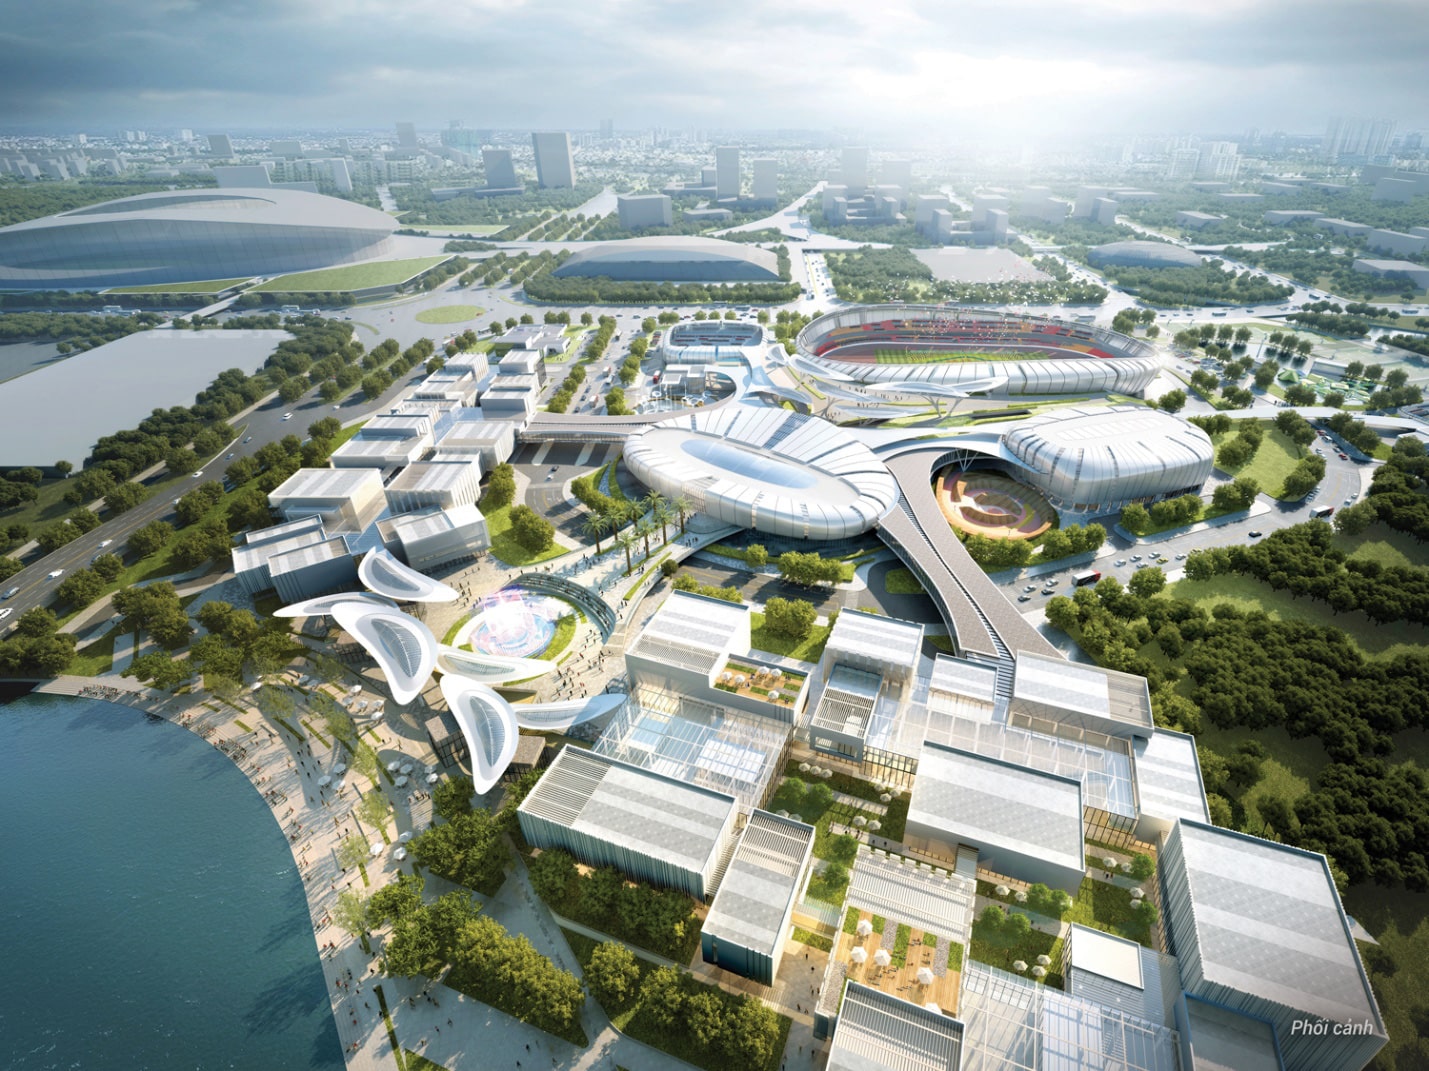 Keppel đã khởi công xây dựng dự án 500 triệu USD - Saigon Sports City - Ảnh 2.